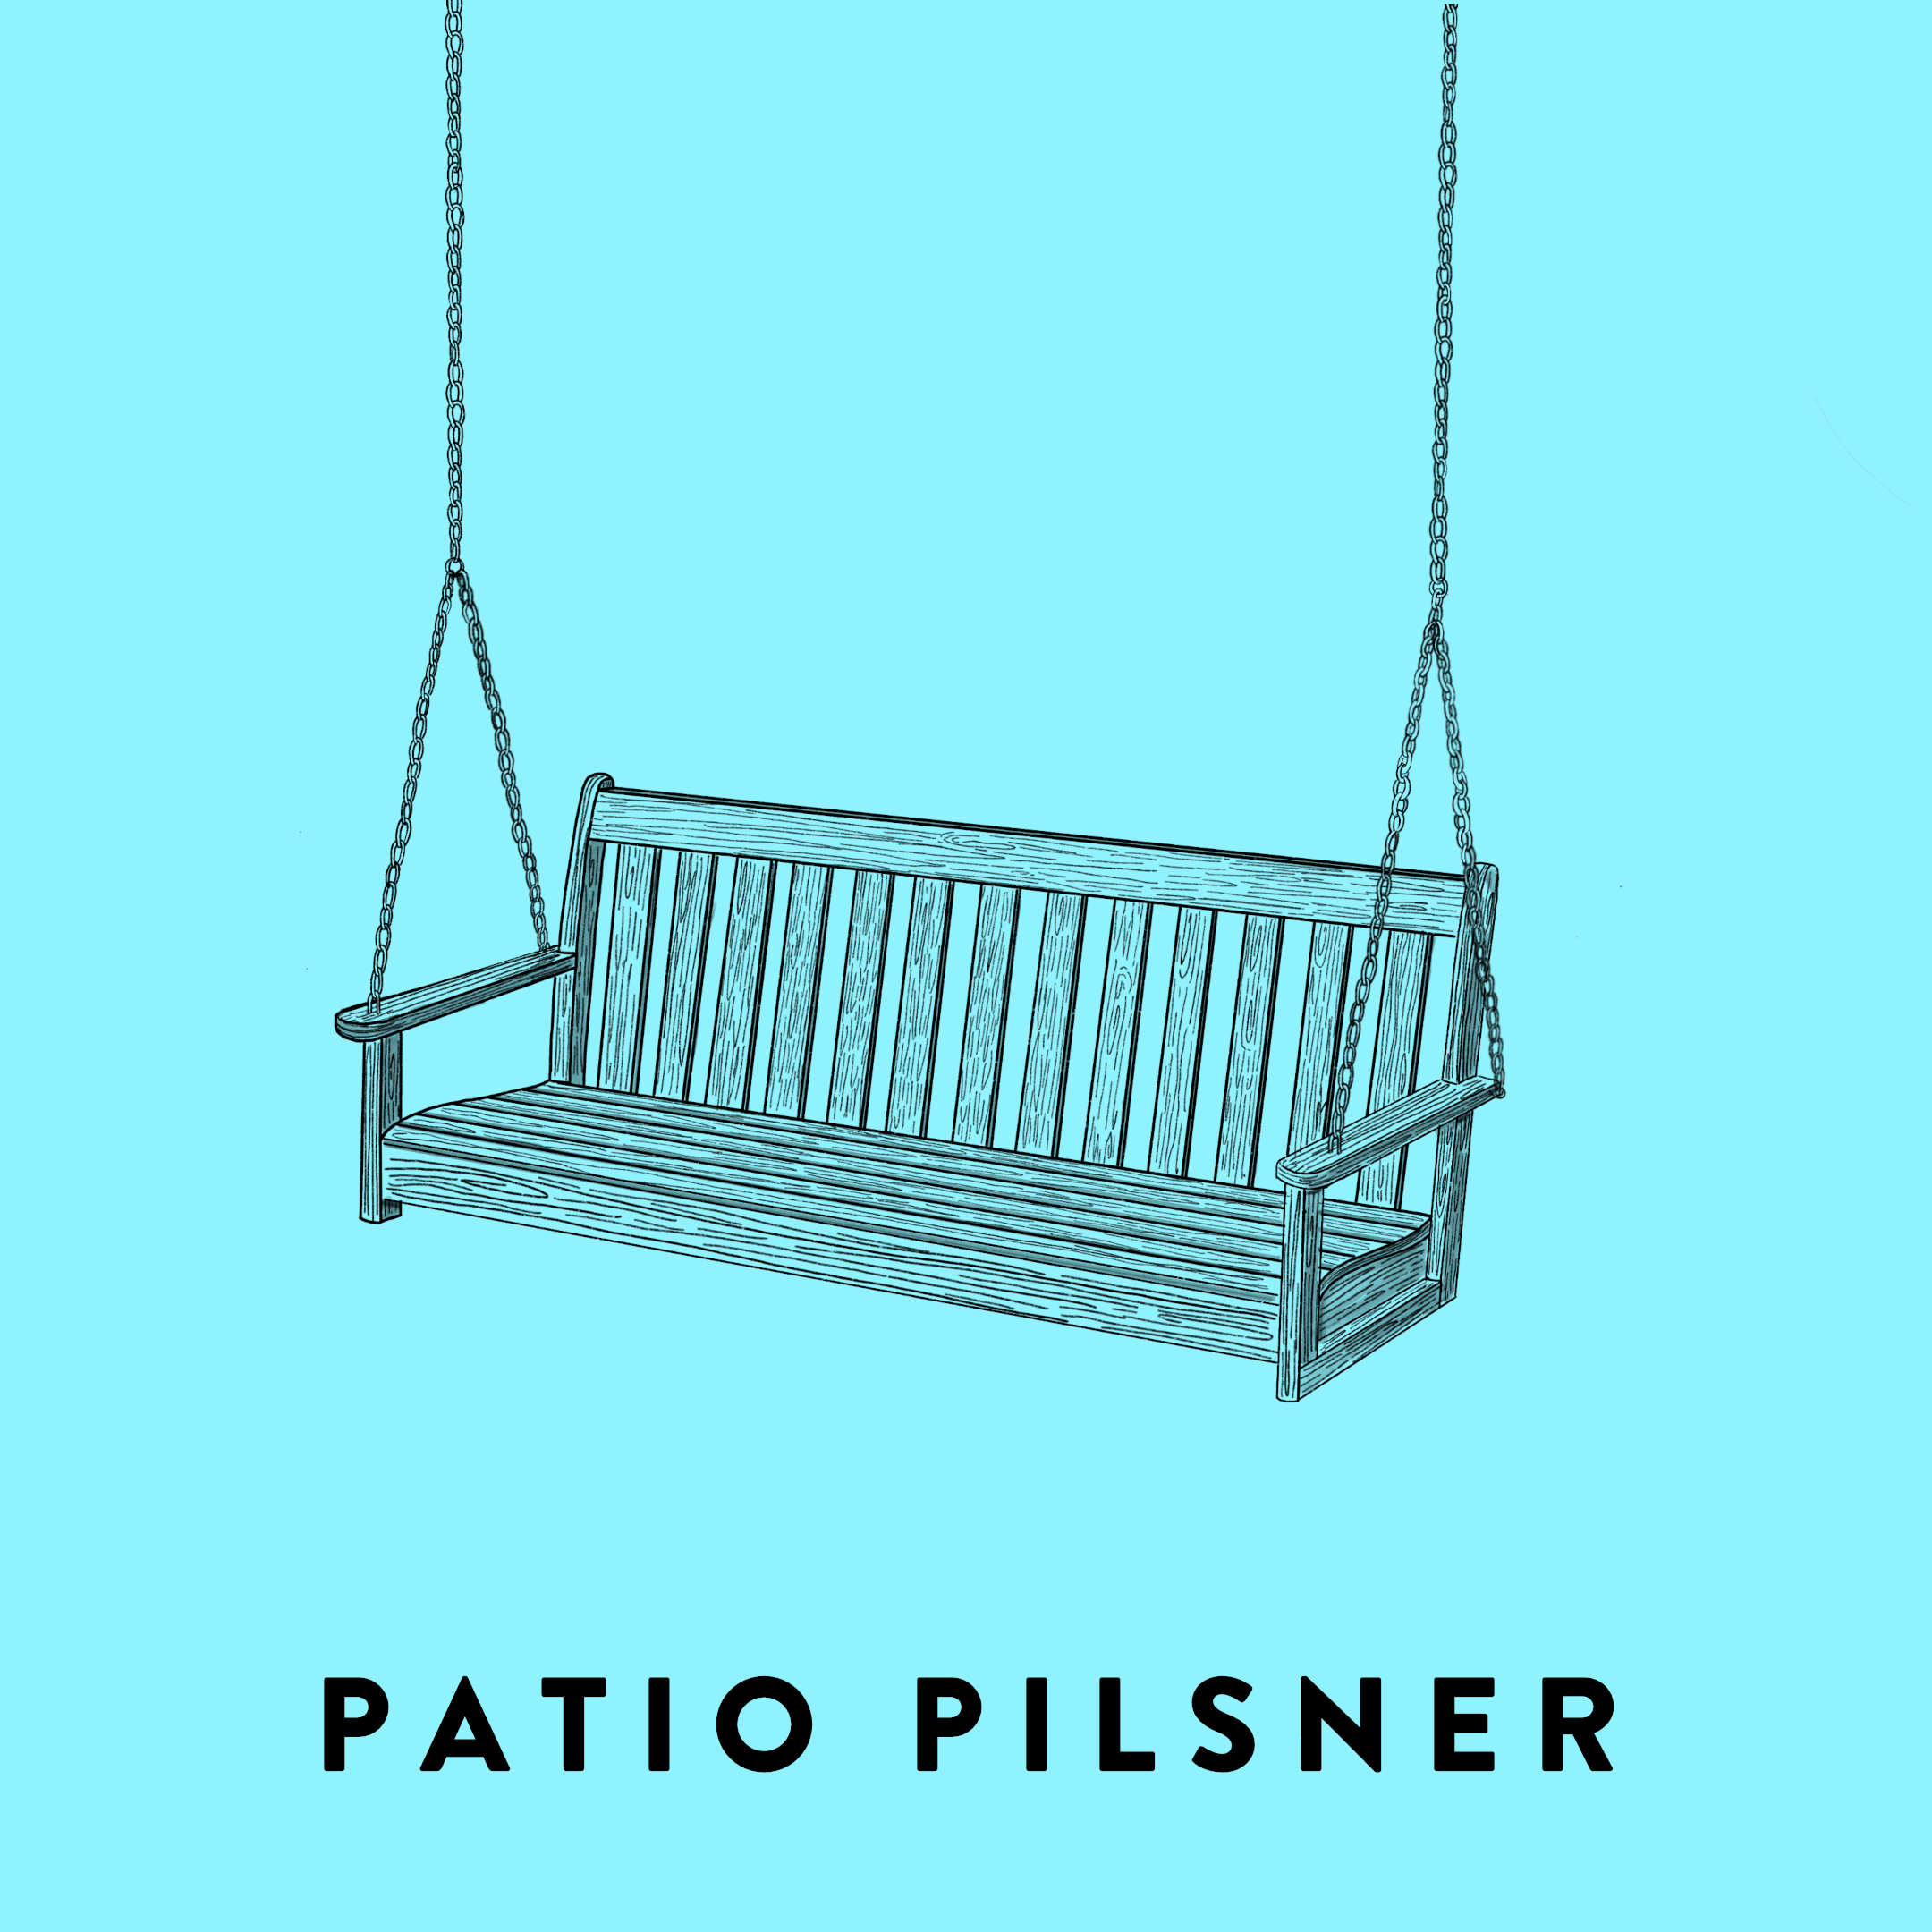 Patio Pilsner